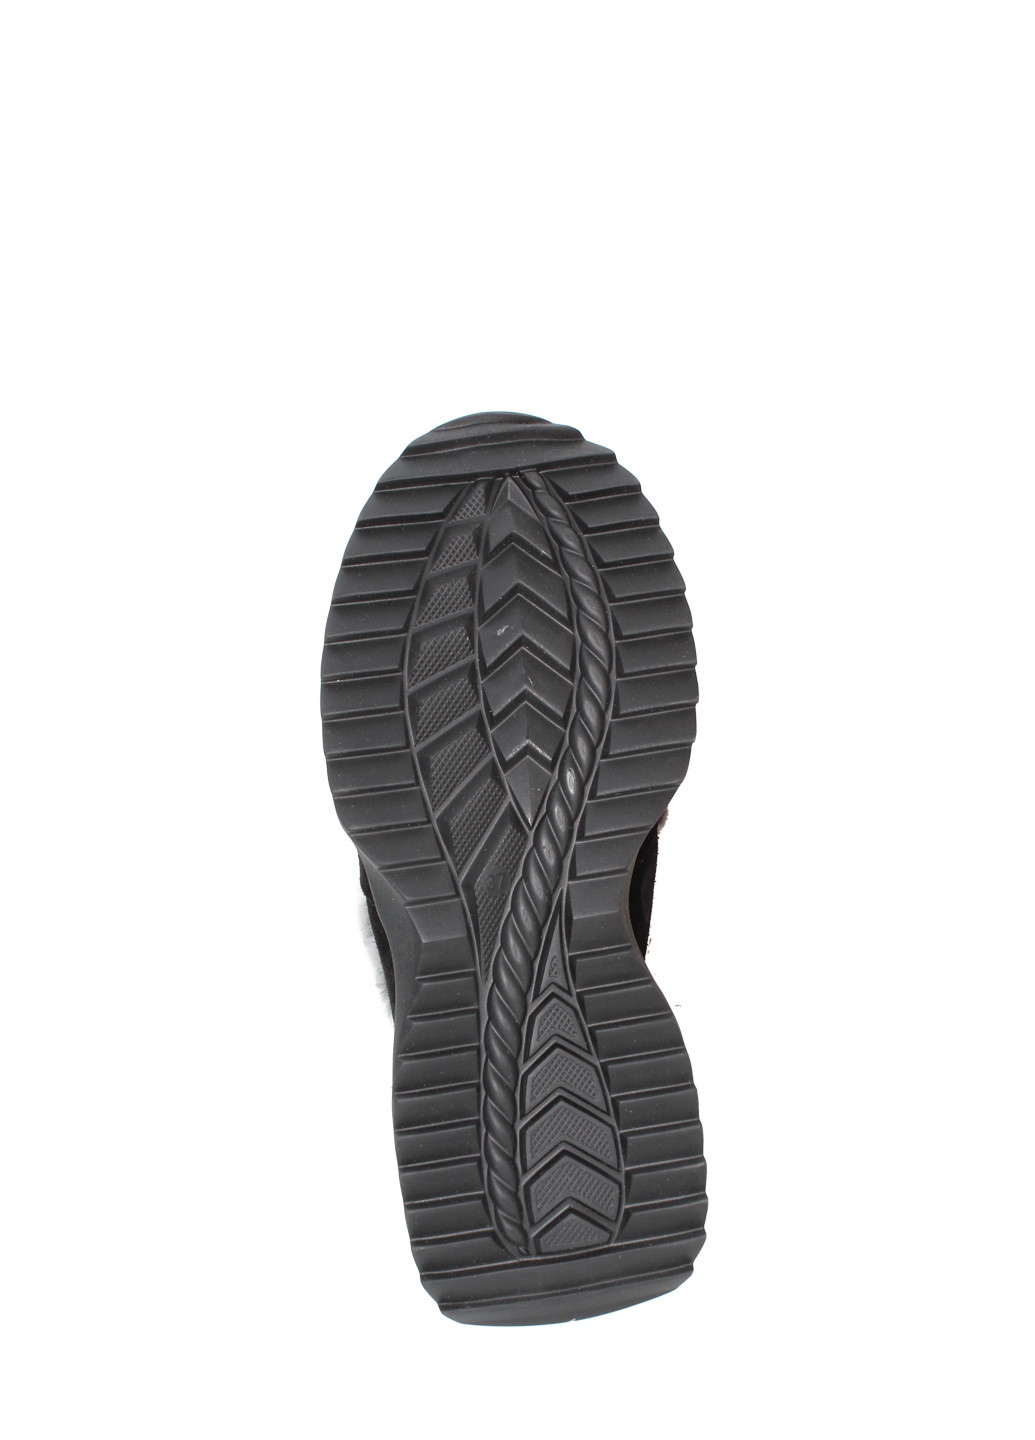 Зимние ботинки dr800-11 черный Dalis из натуральной замши